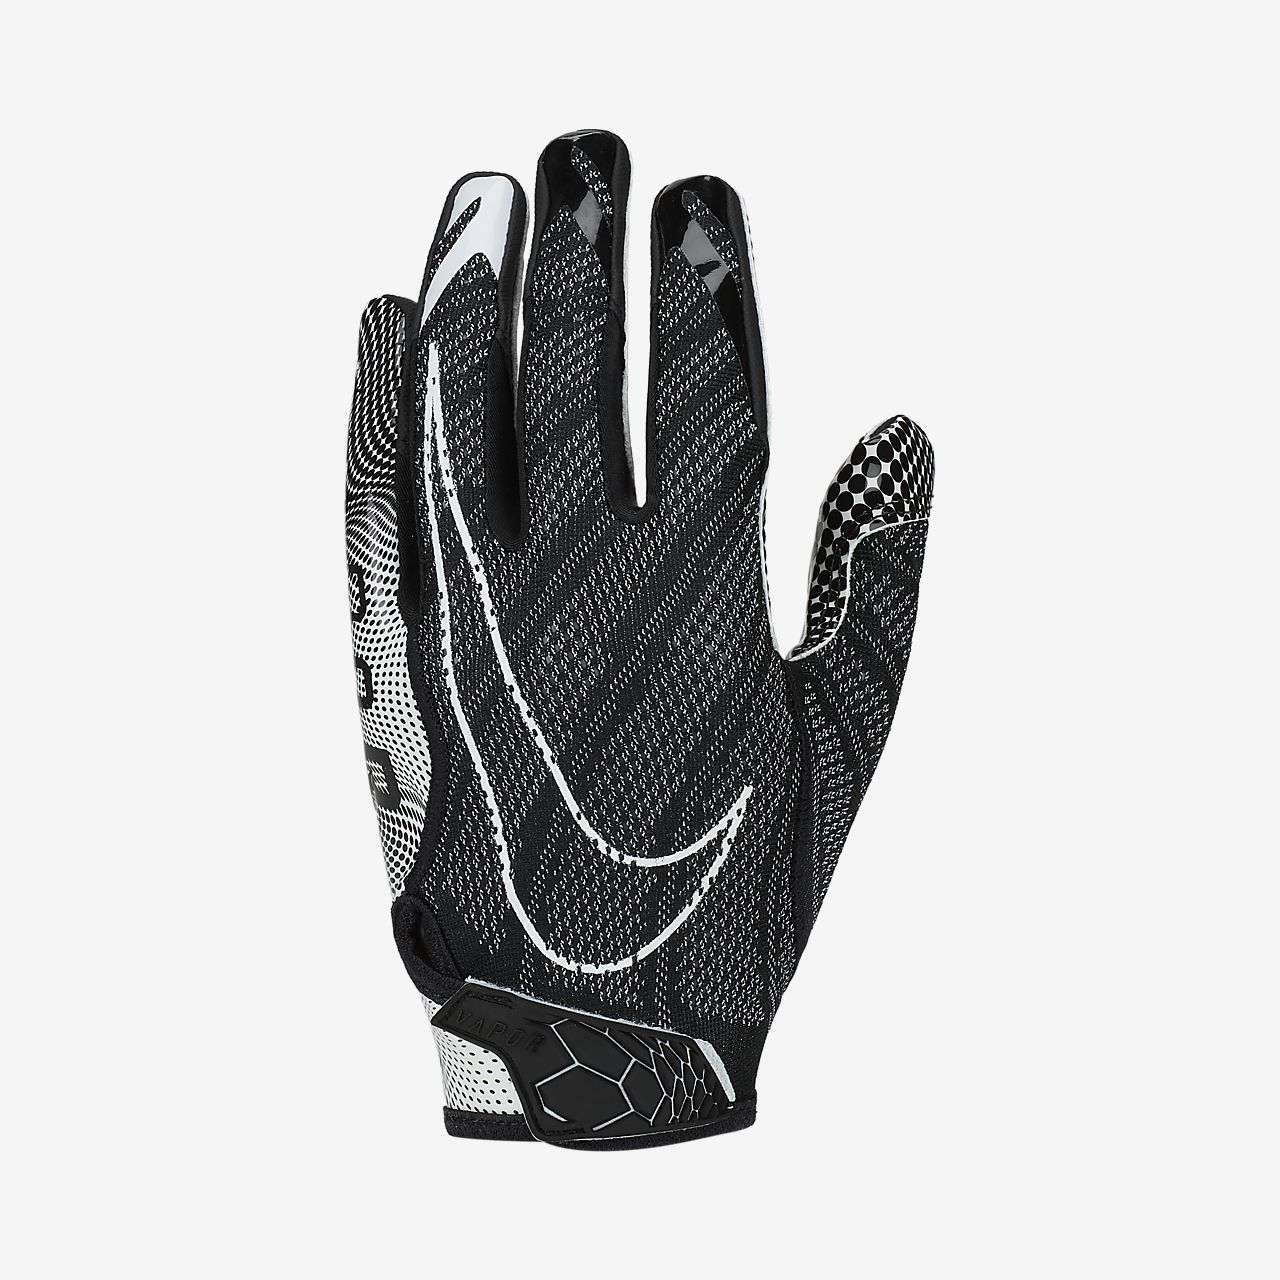 nike vapor 3 football gloves